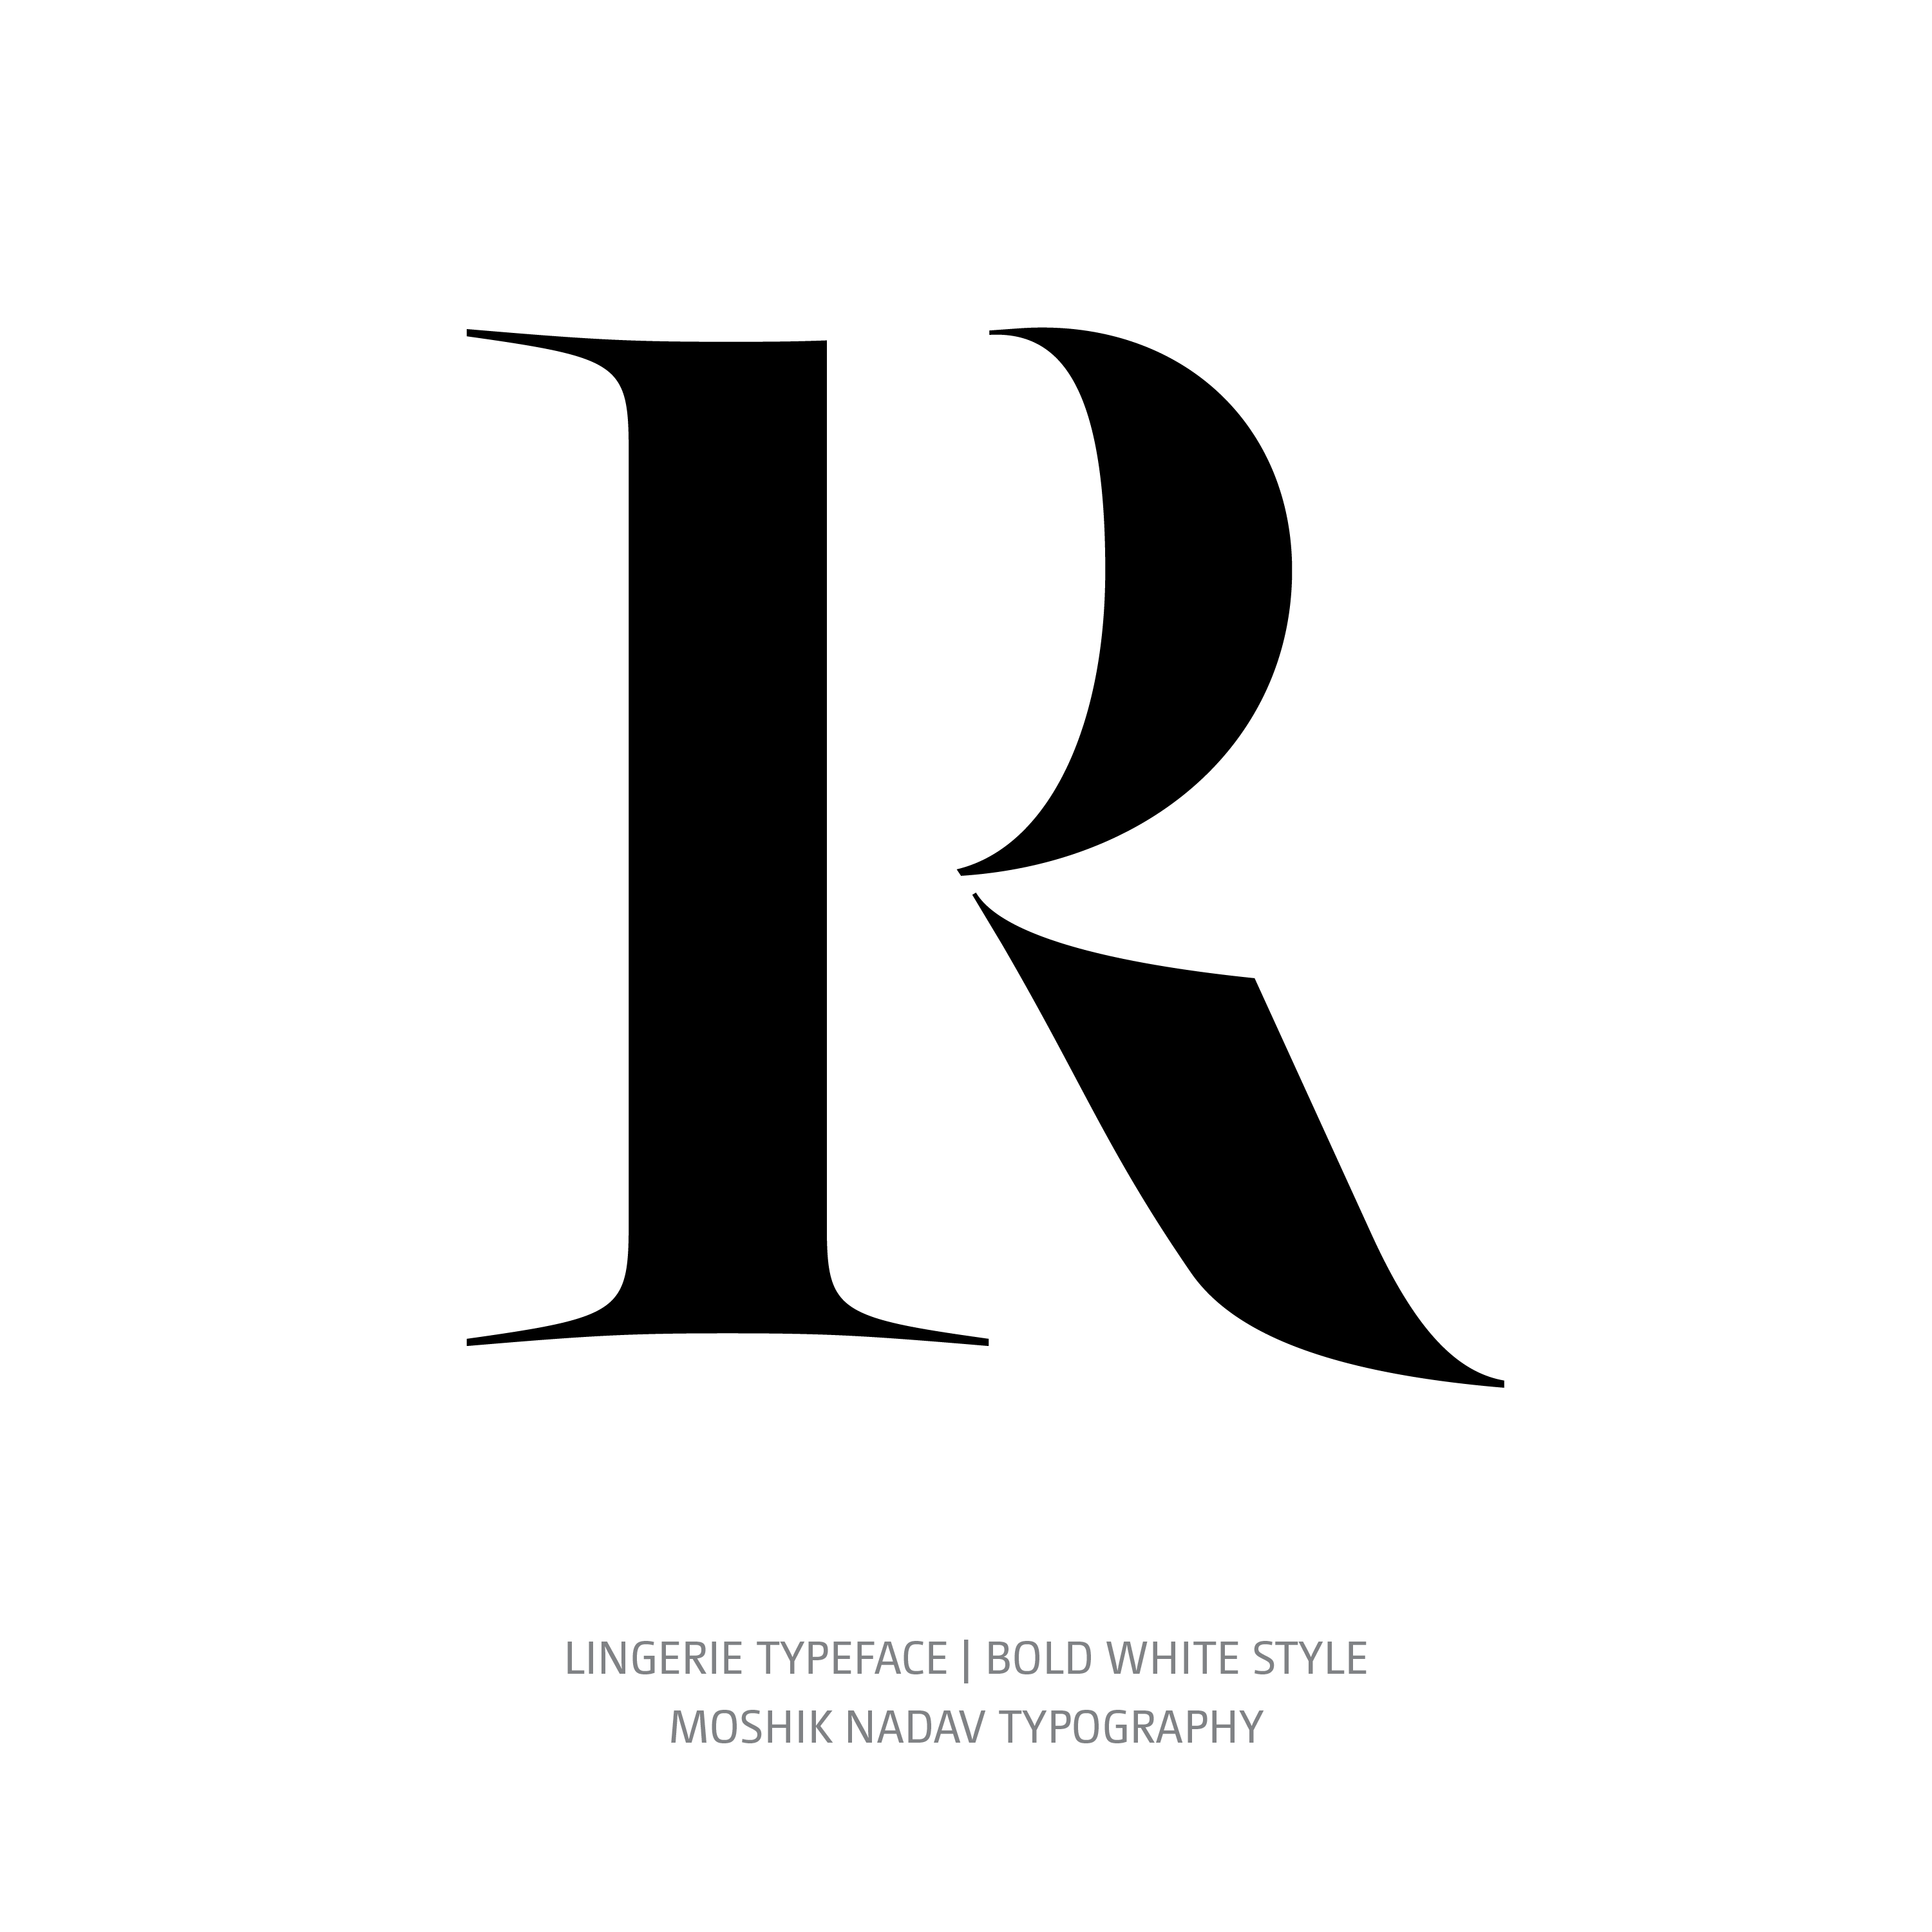 Lingerie Typeface Bold White R